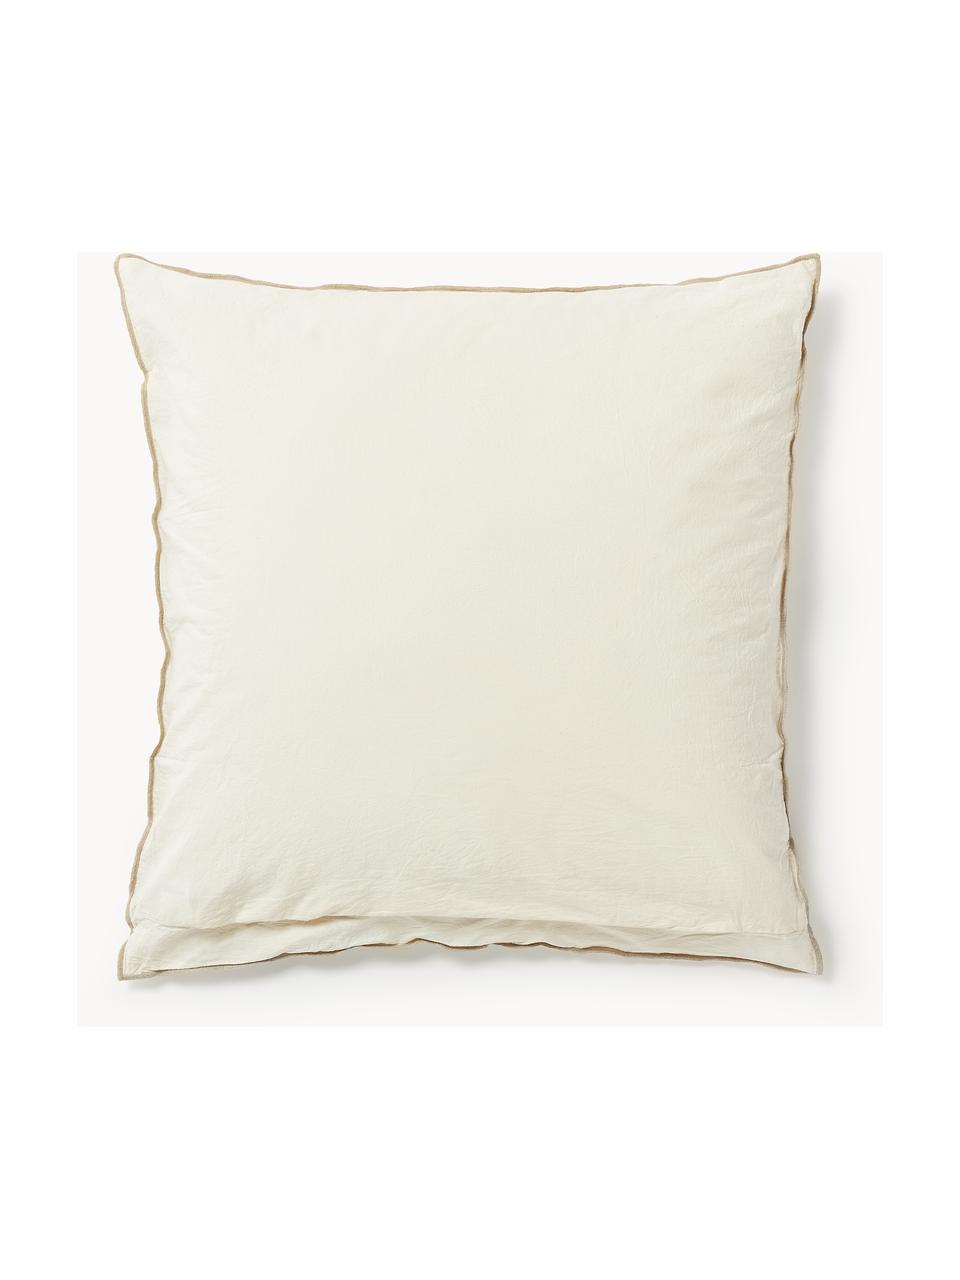 Taie d'oreiller en tissu gaufré Clemente, Beige clair, blanc cassé, larg. 50 x long. 70 cm